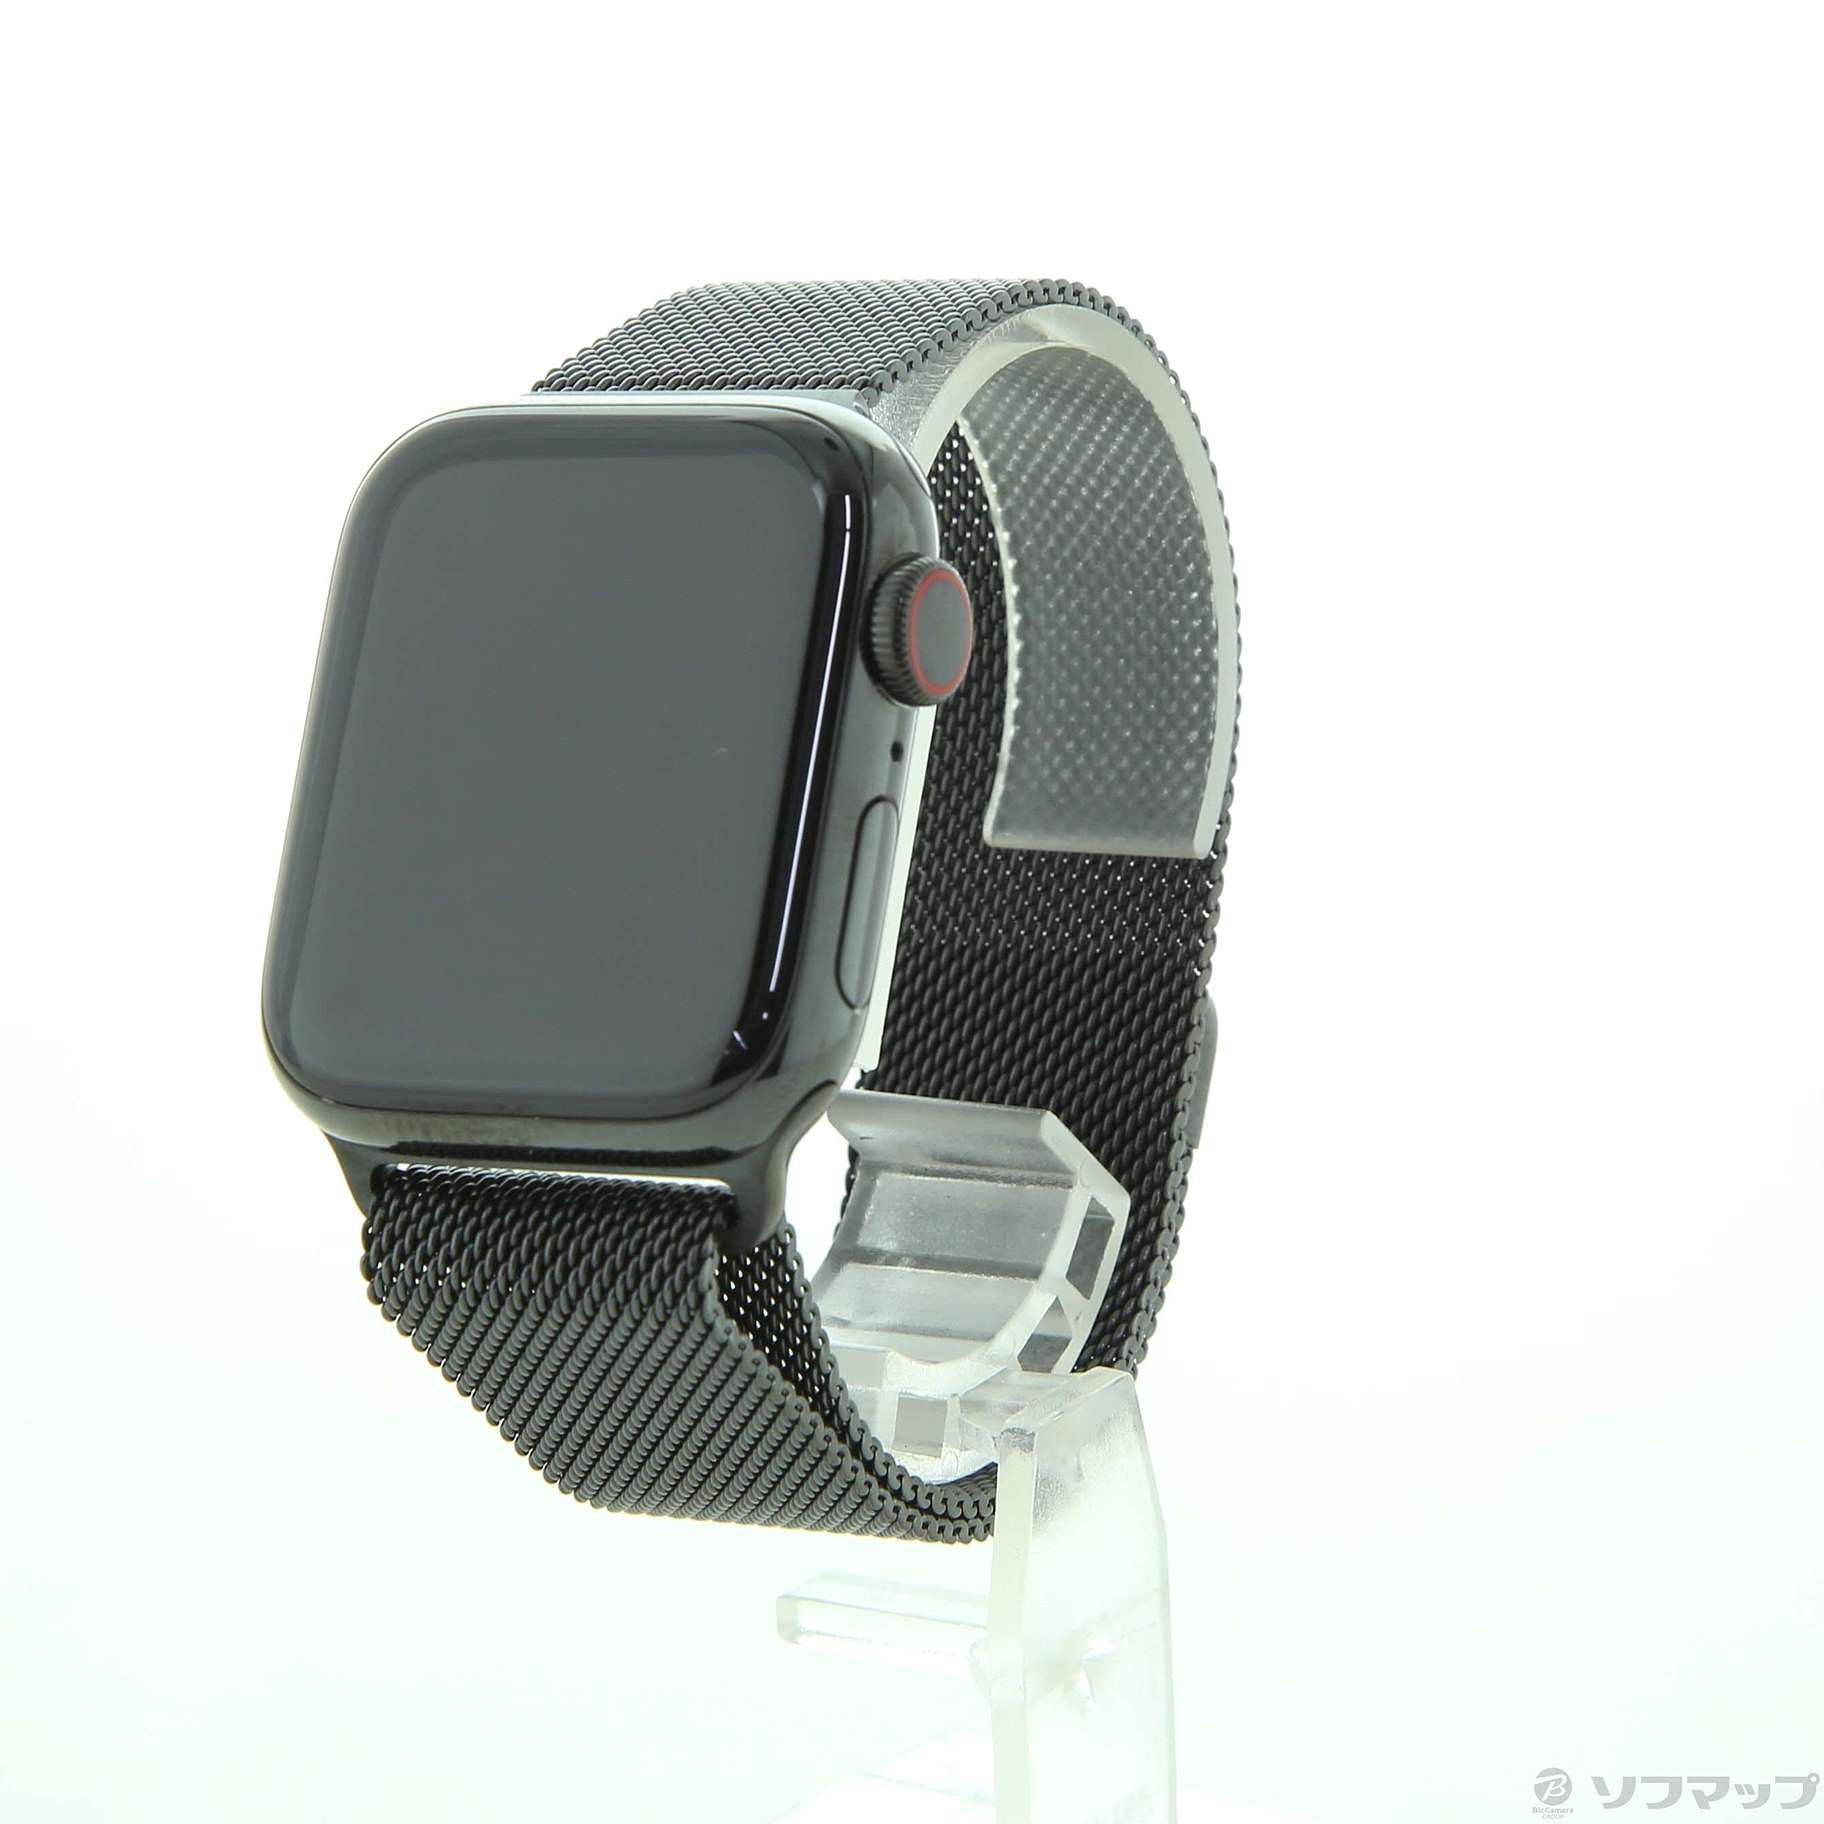 Apple Watch series4+ブラックミラネーゼループ